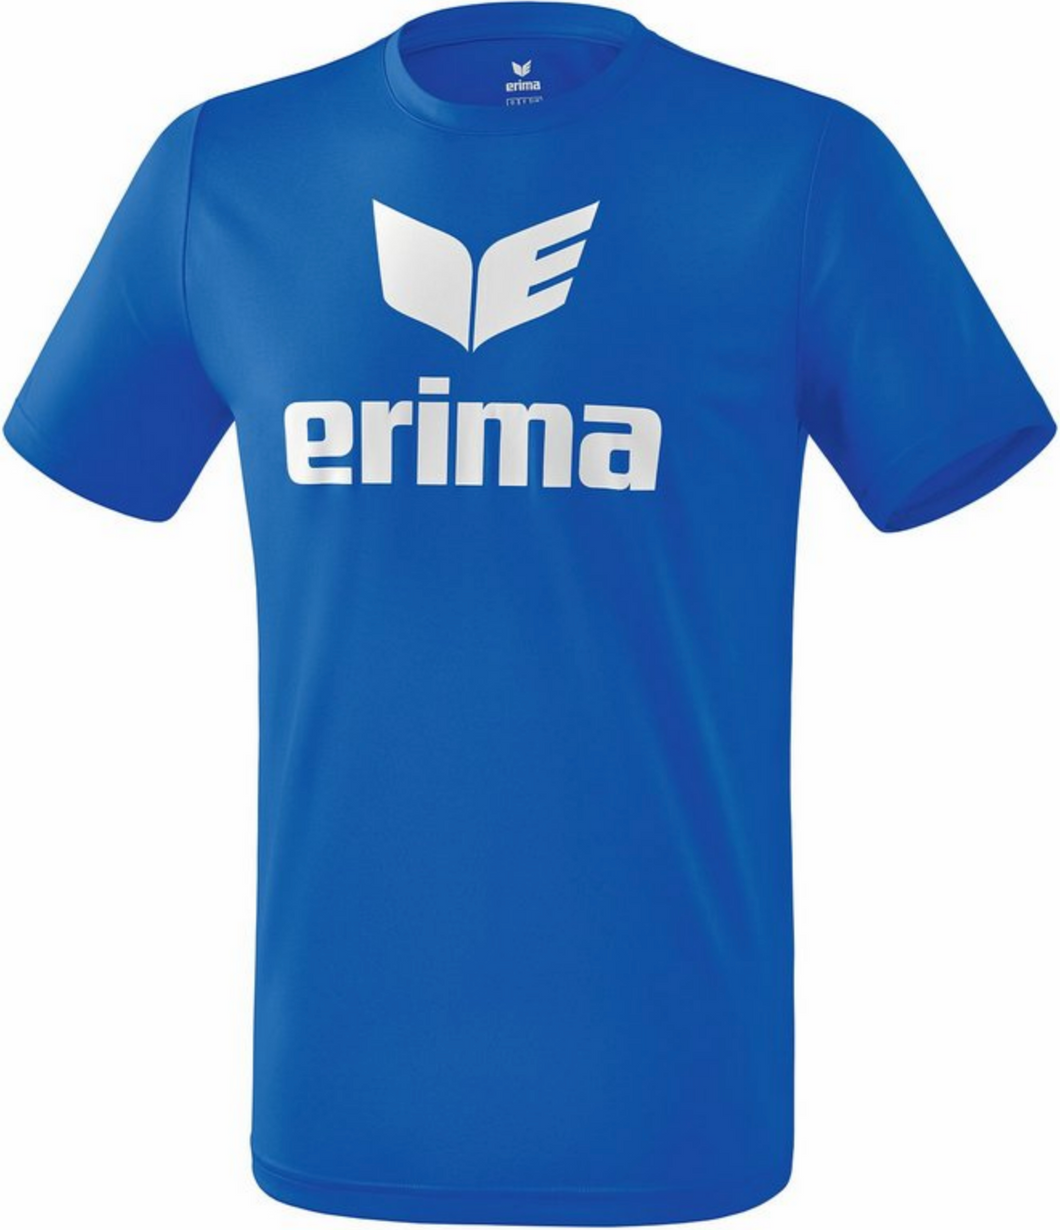 Outlet Str. 3XL ERIMA t-shirt